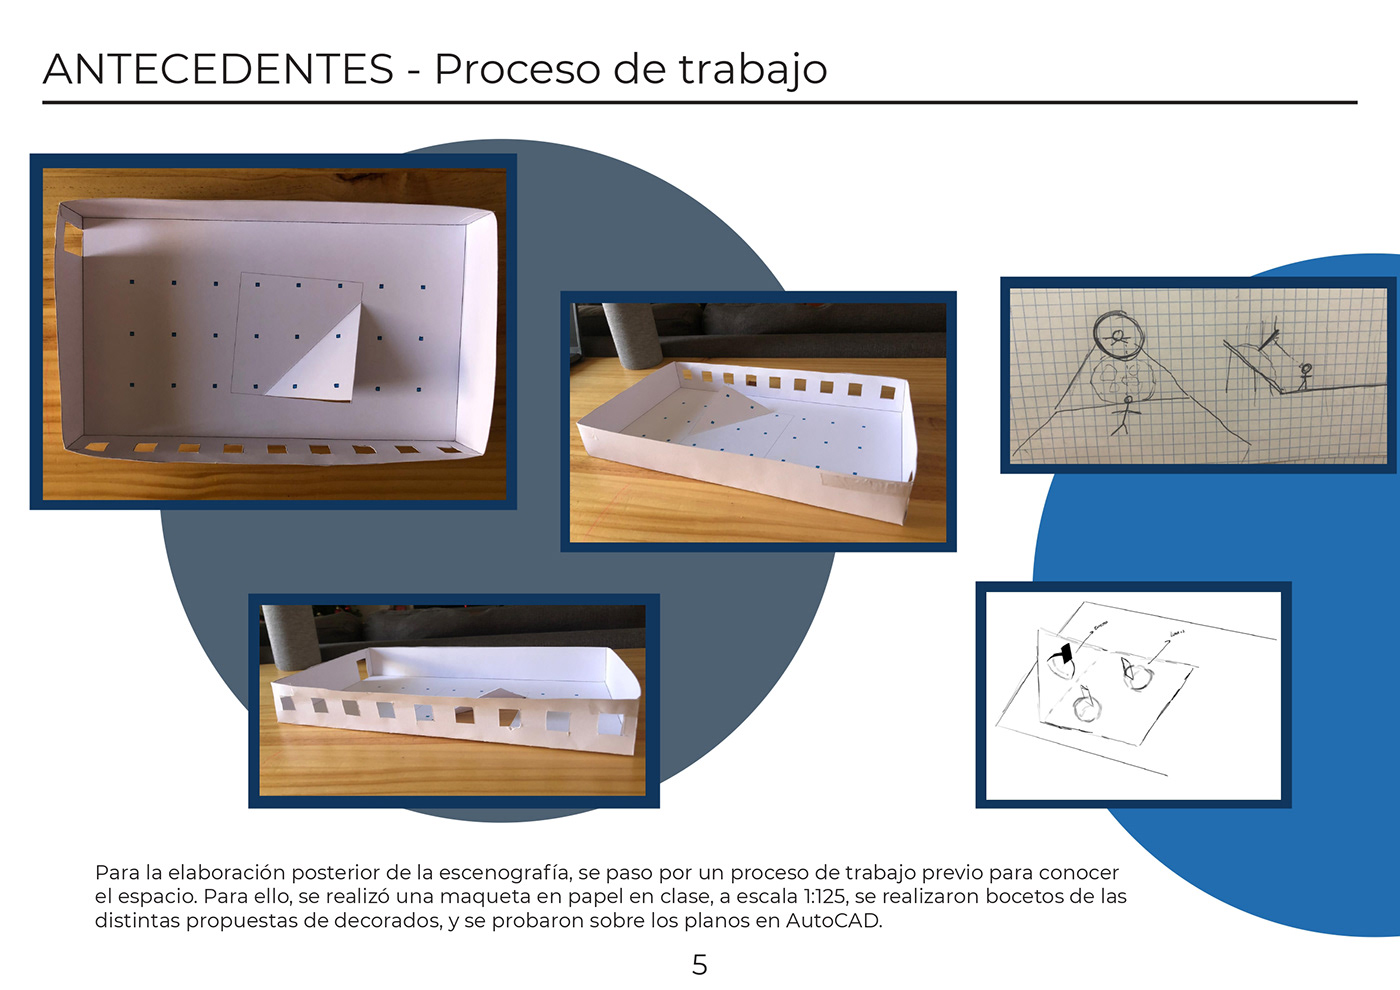 3D arquitectura arquitectura efímera diseño escenografia interior design  Matadero Madrid